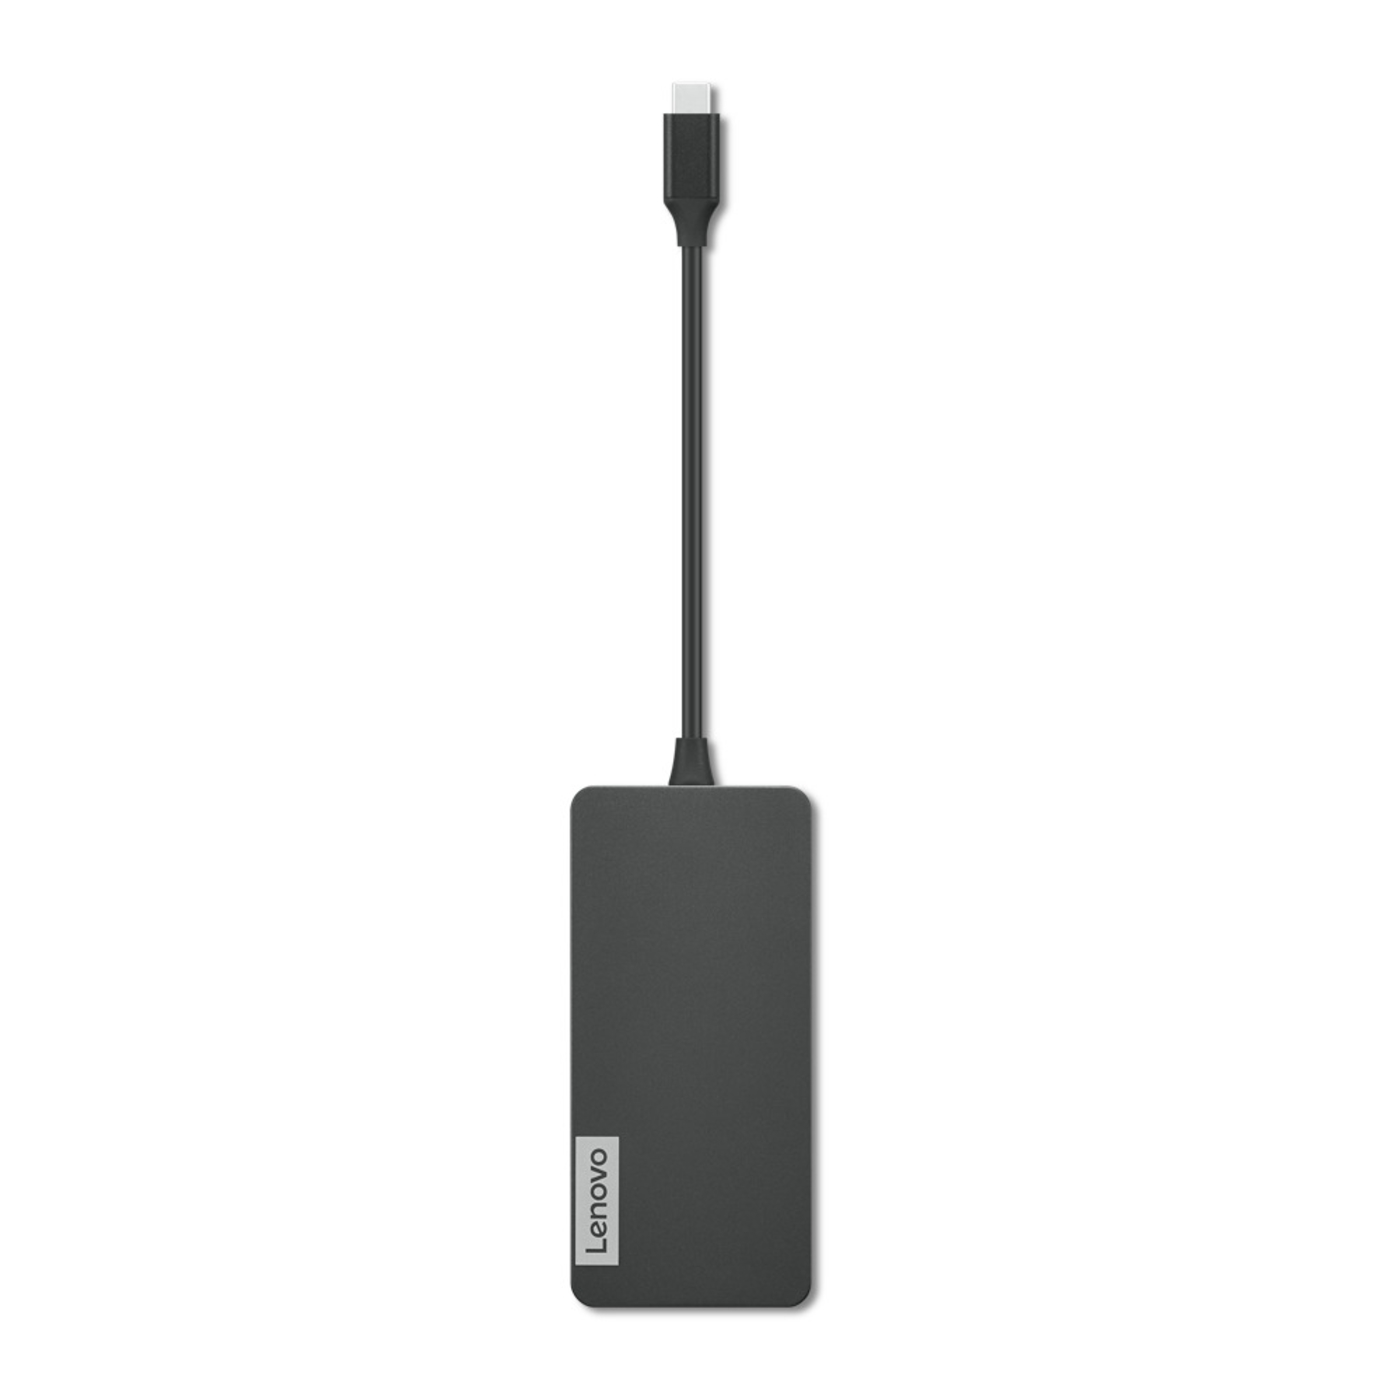 Adaptador Hub Multipuerto LENOVO 7 en 1 USB-C a 2 USB 3.0 /USB 2.0/USB-C/HDMI/Lector de Tarjetas TF/Lector de Tarjetas SD